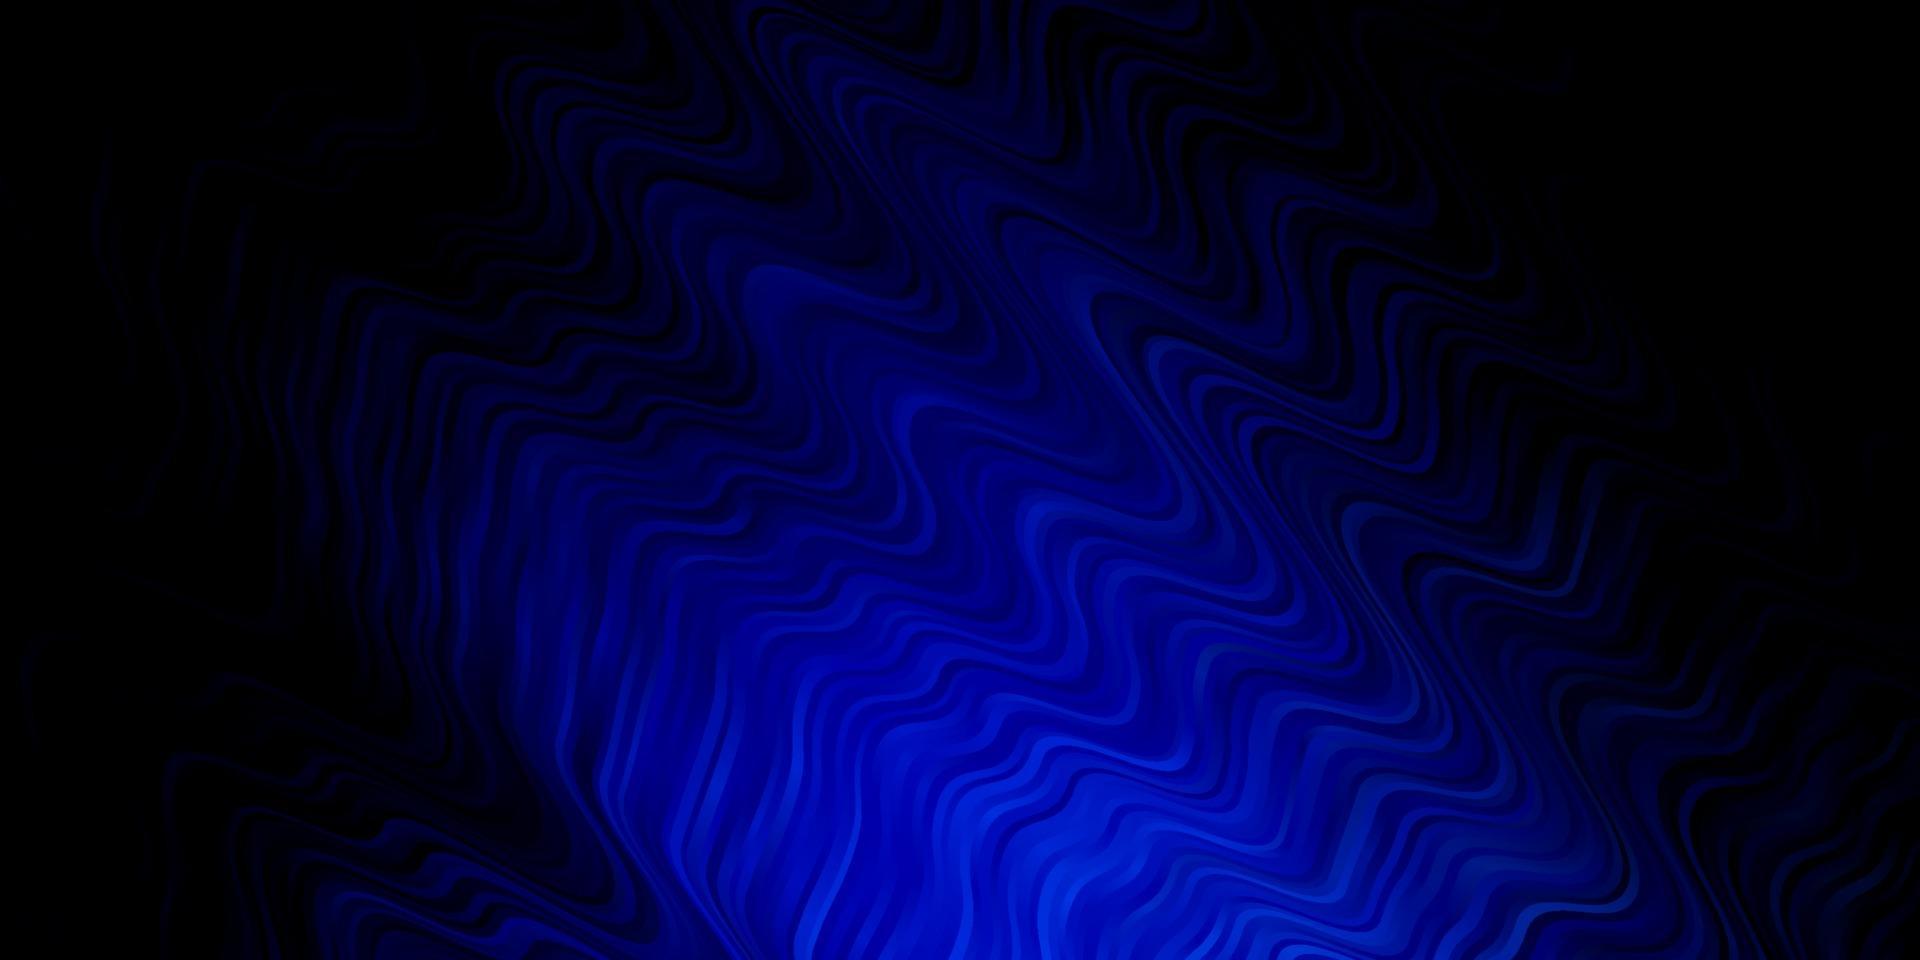 Telón de fondo de vector azul oscuro con arco circular.